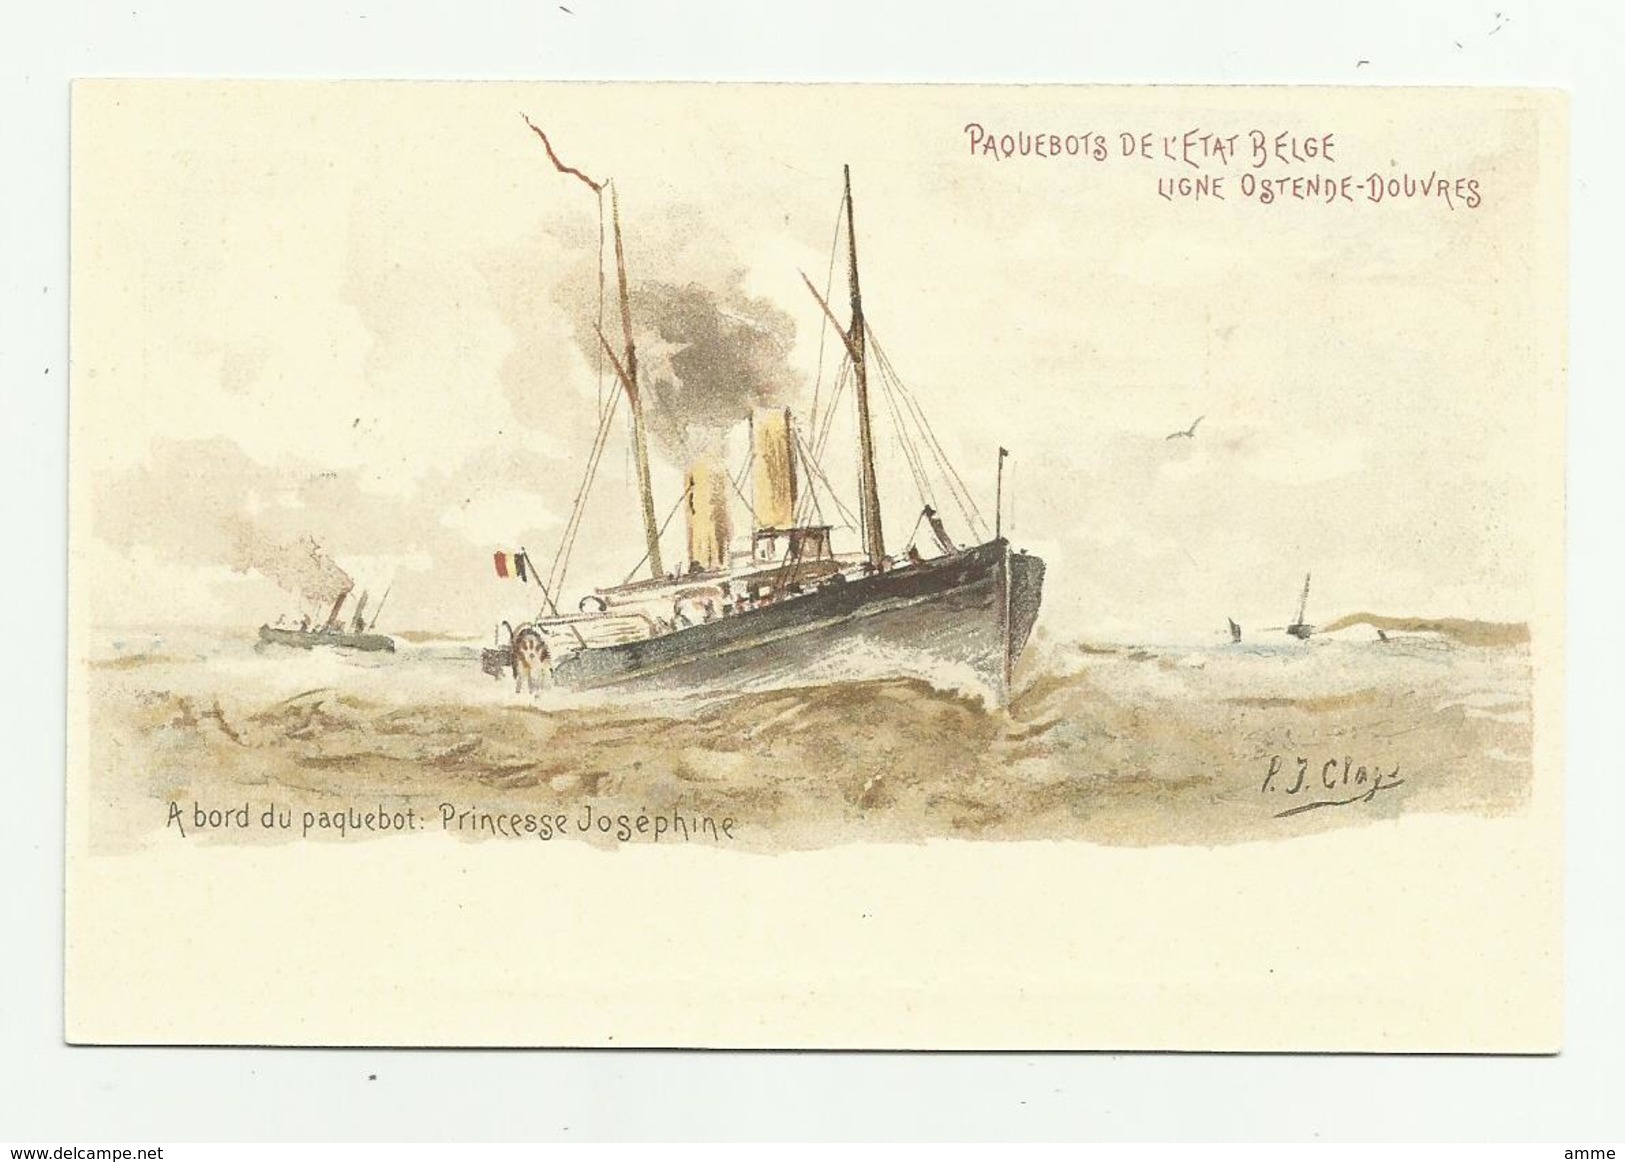 Oostende  *   A Bord Du Paquebot De L'Etat Belge, Ligne Ostende - Douvres  - Princesse Josephine  (P.J. Clays) - Tarjetas Transatlánticos